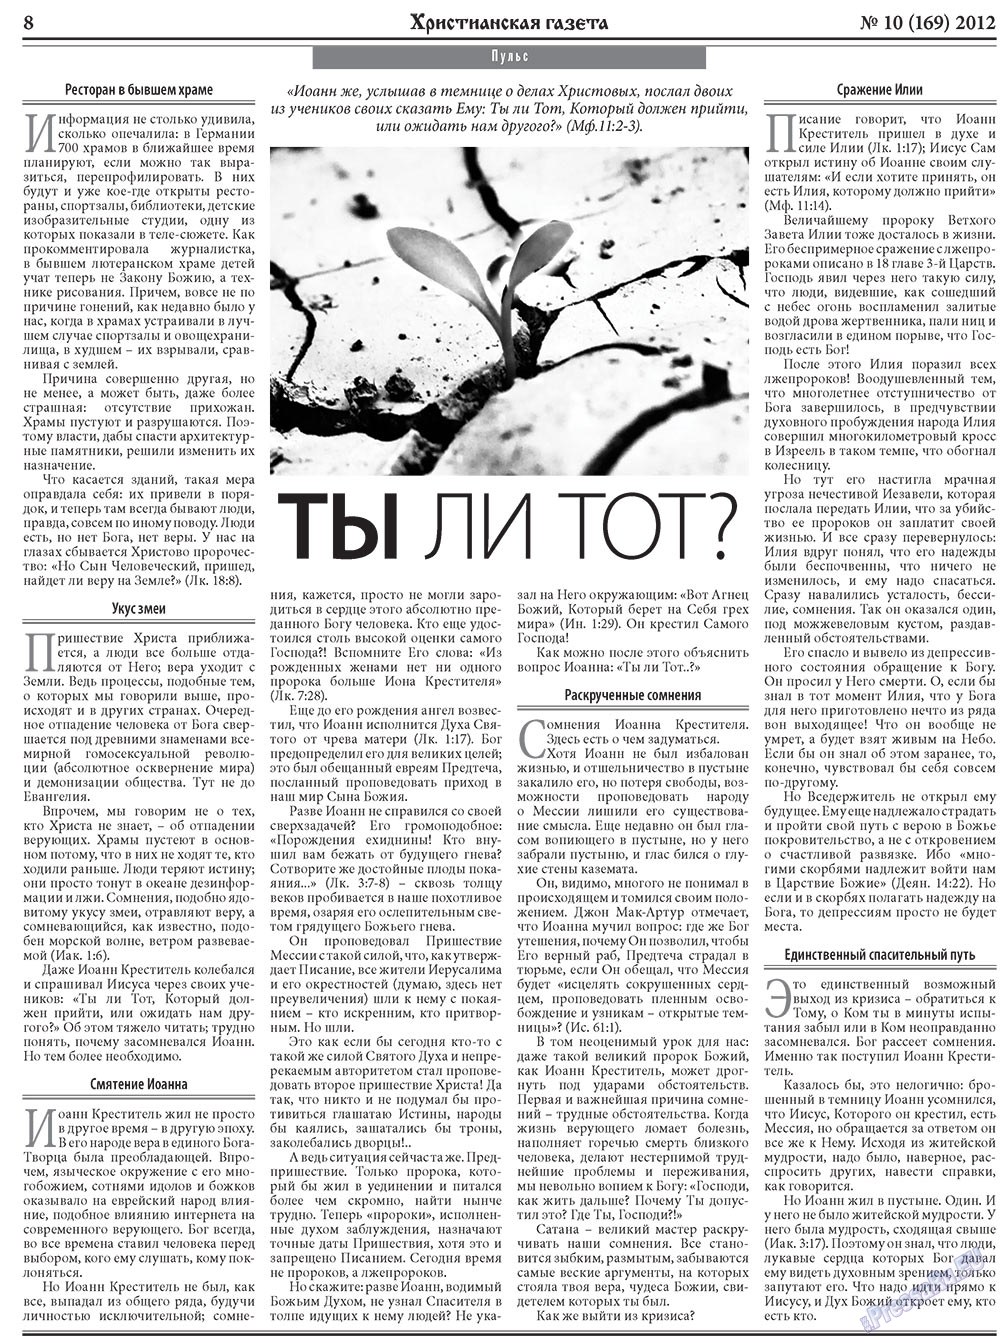 Христианская газета, газета. 2012 №10 стр.8